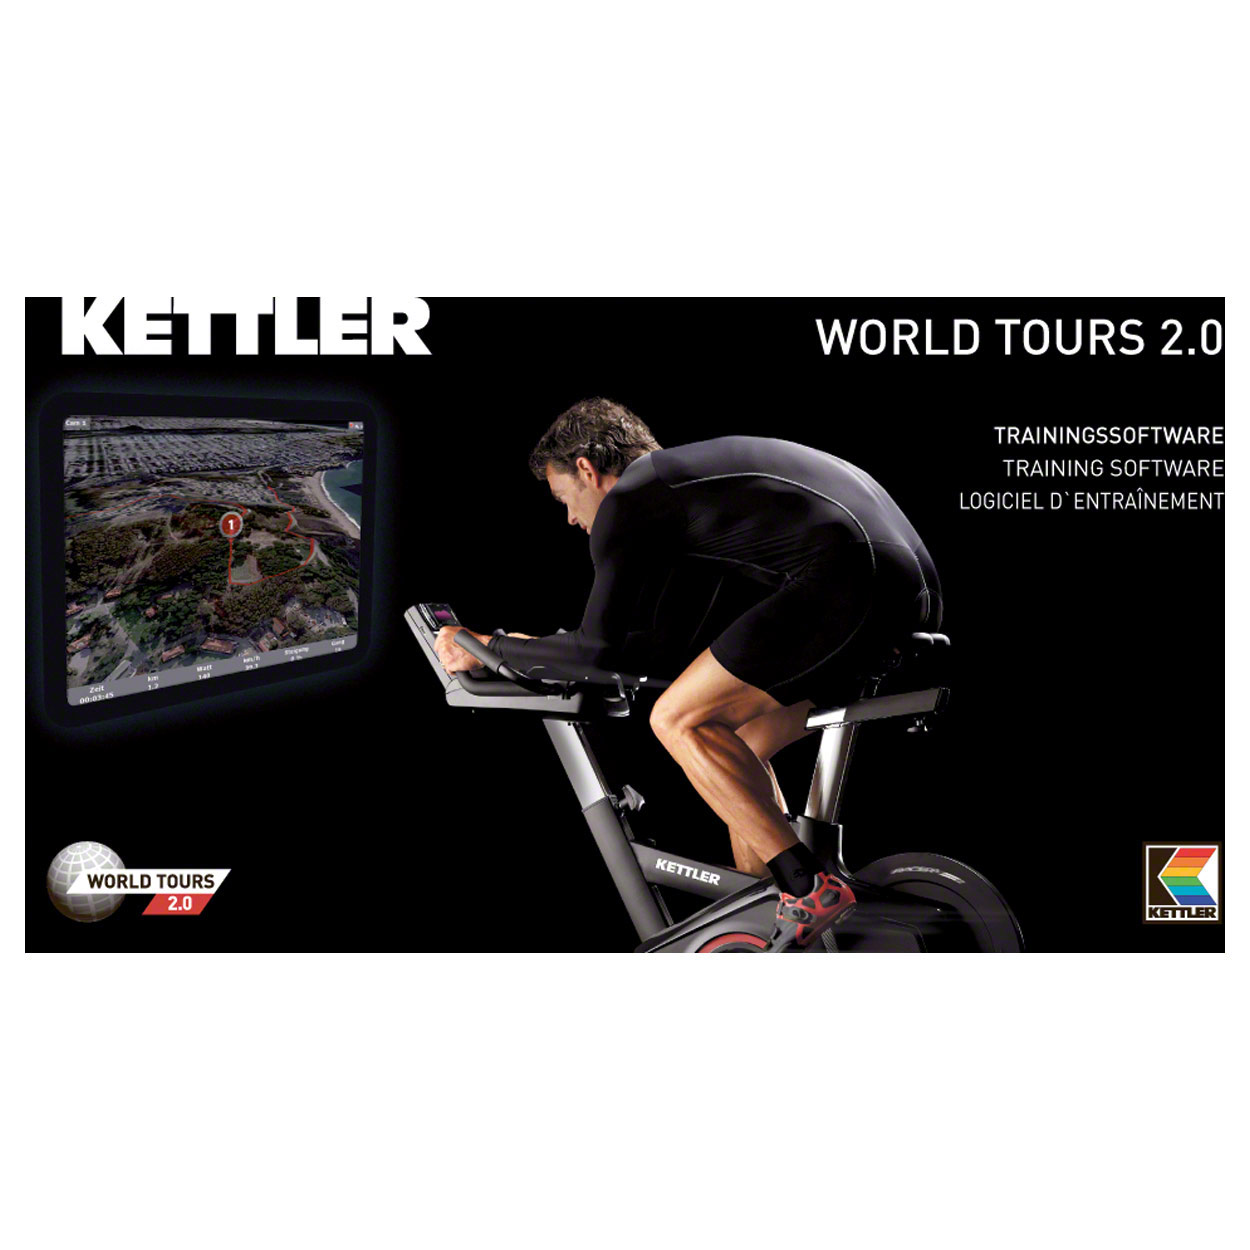 kettler world tours app